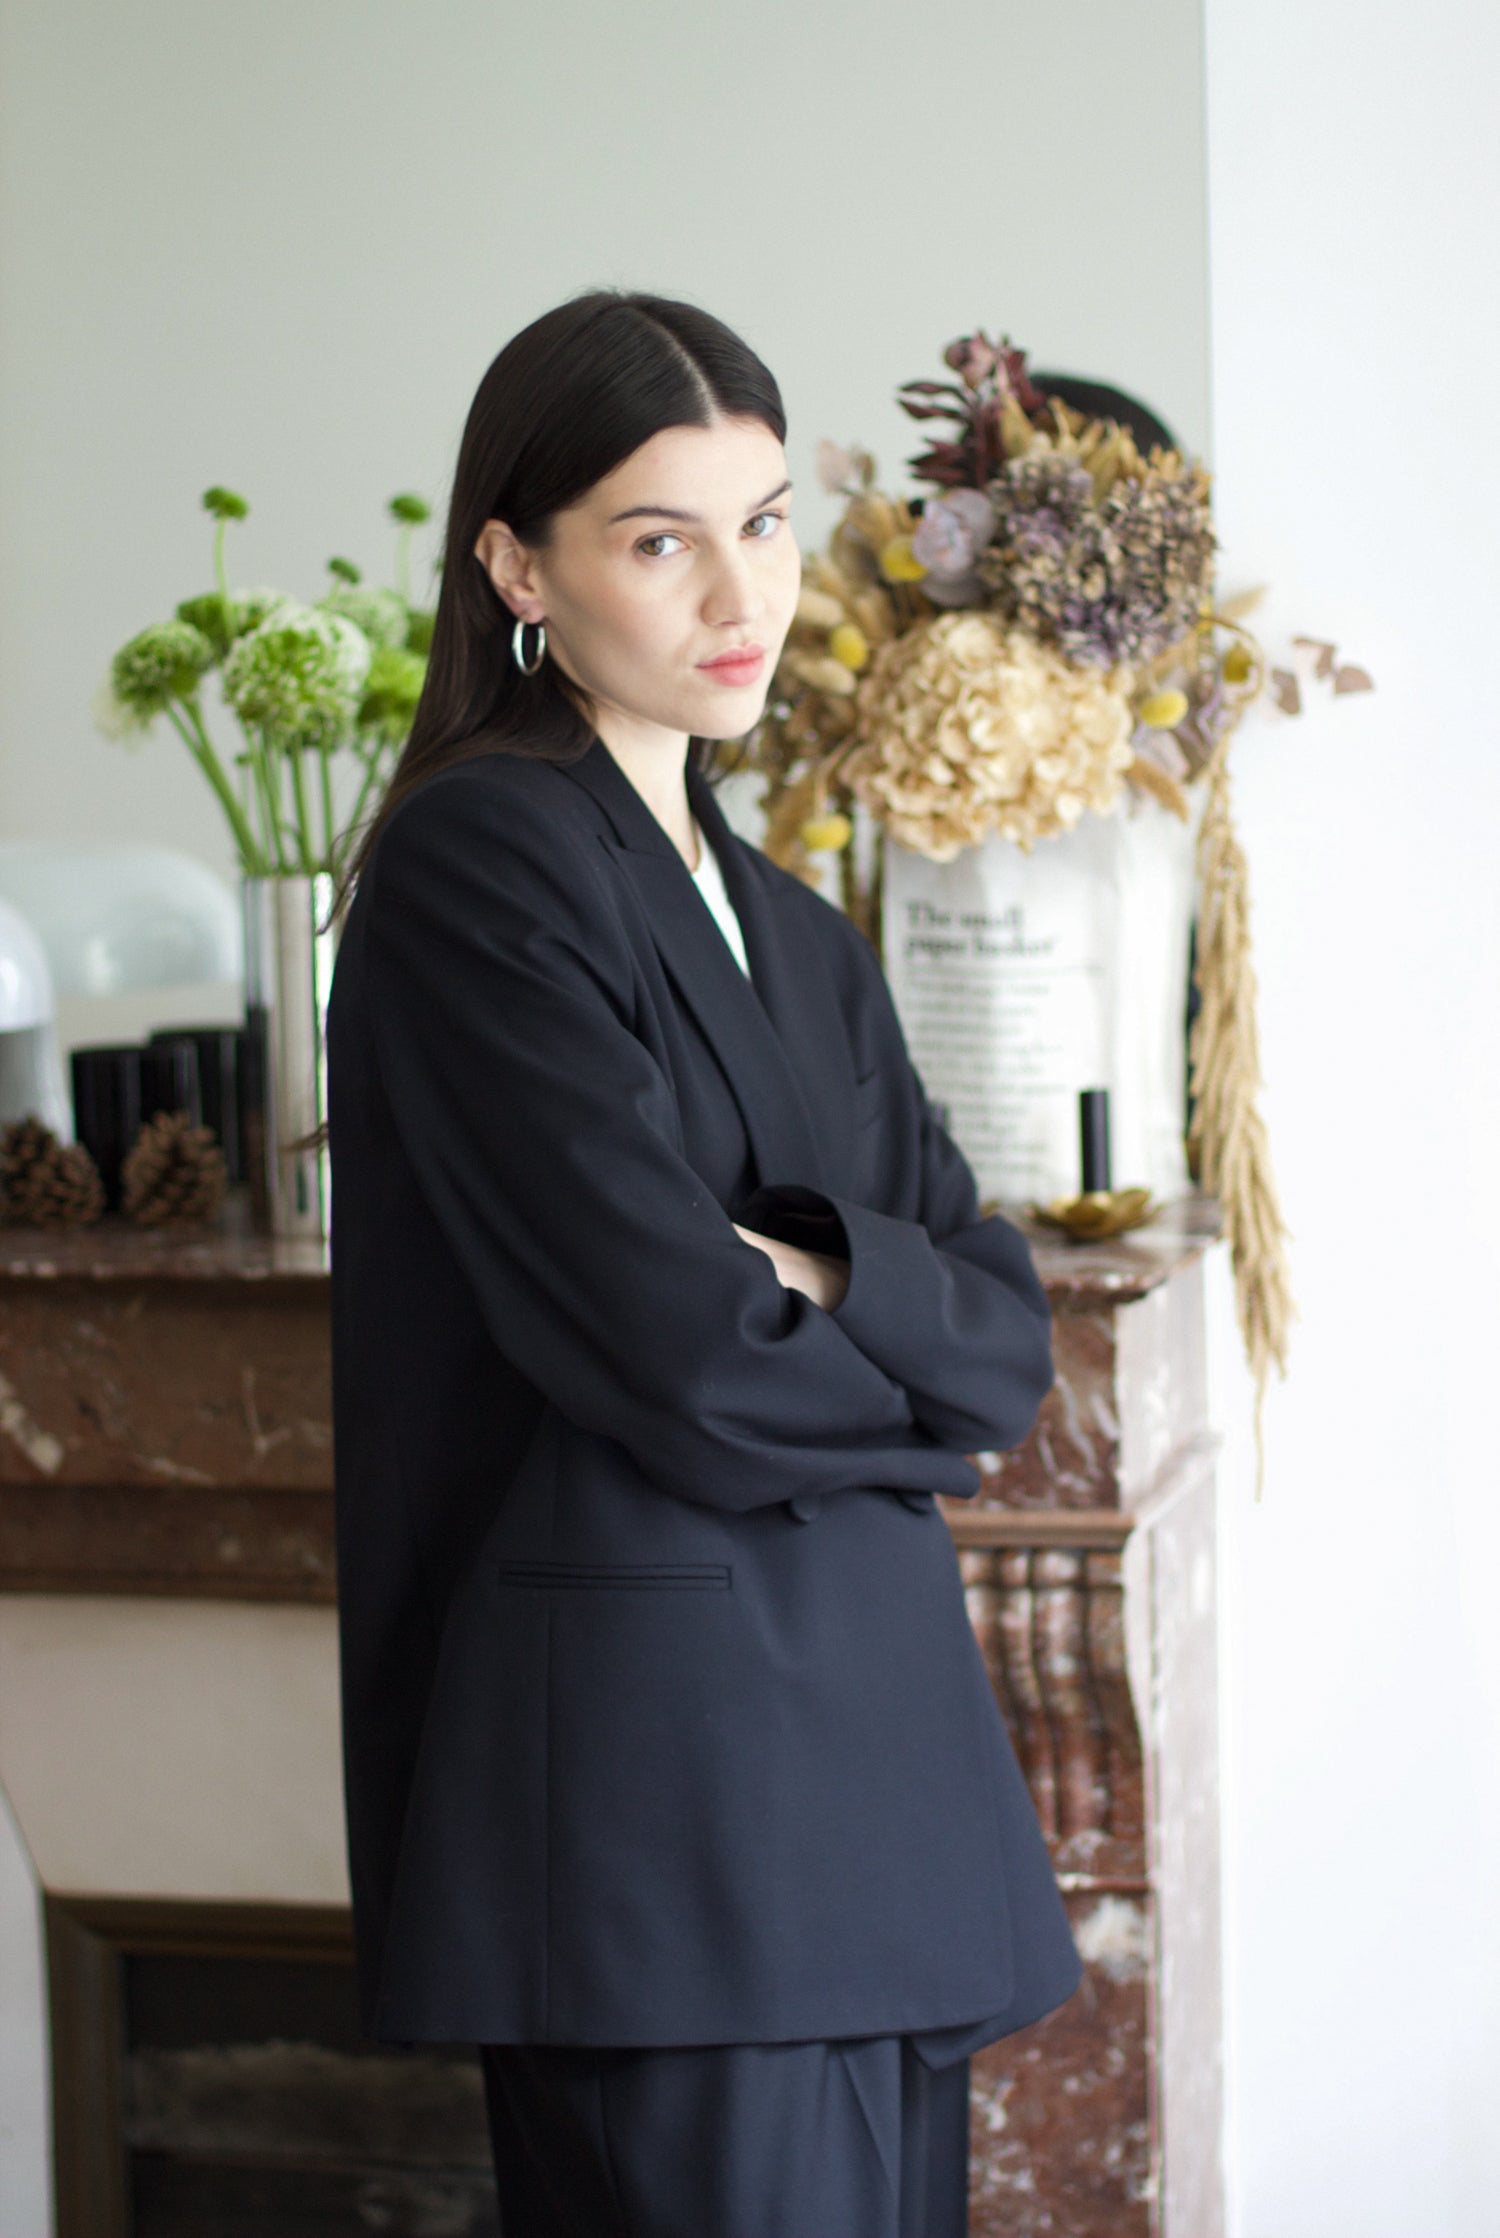 veste de tailleur croisée femme double boutonnage twill de laine noire Made in France par Facettes Studio